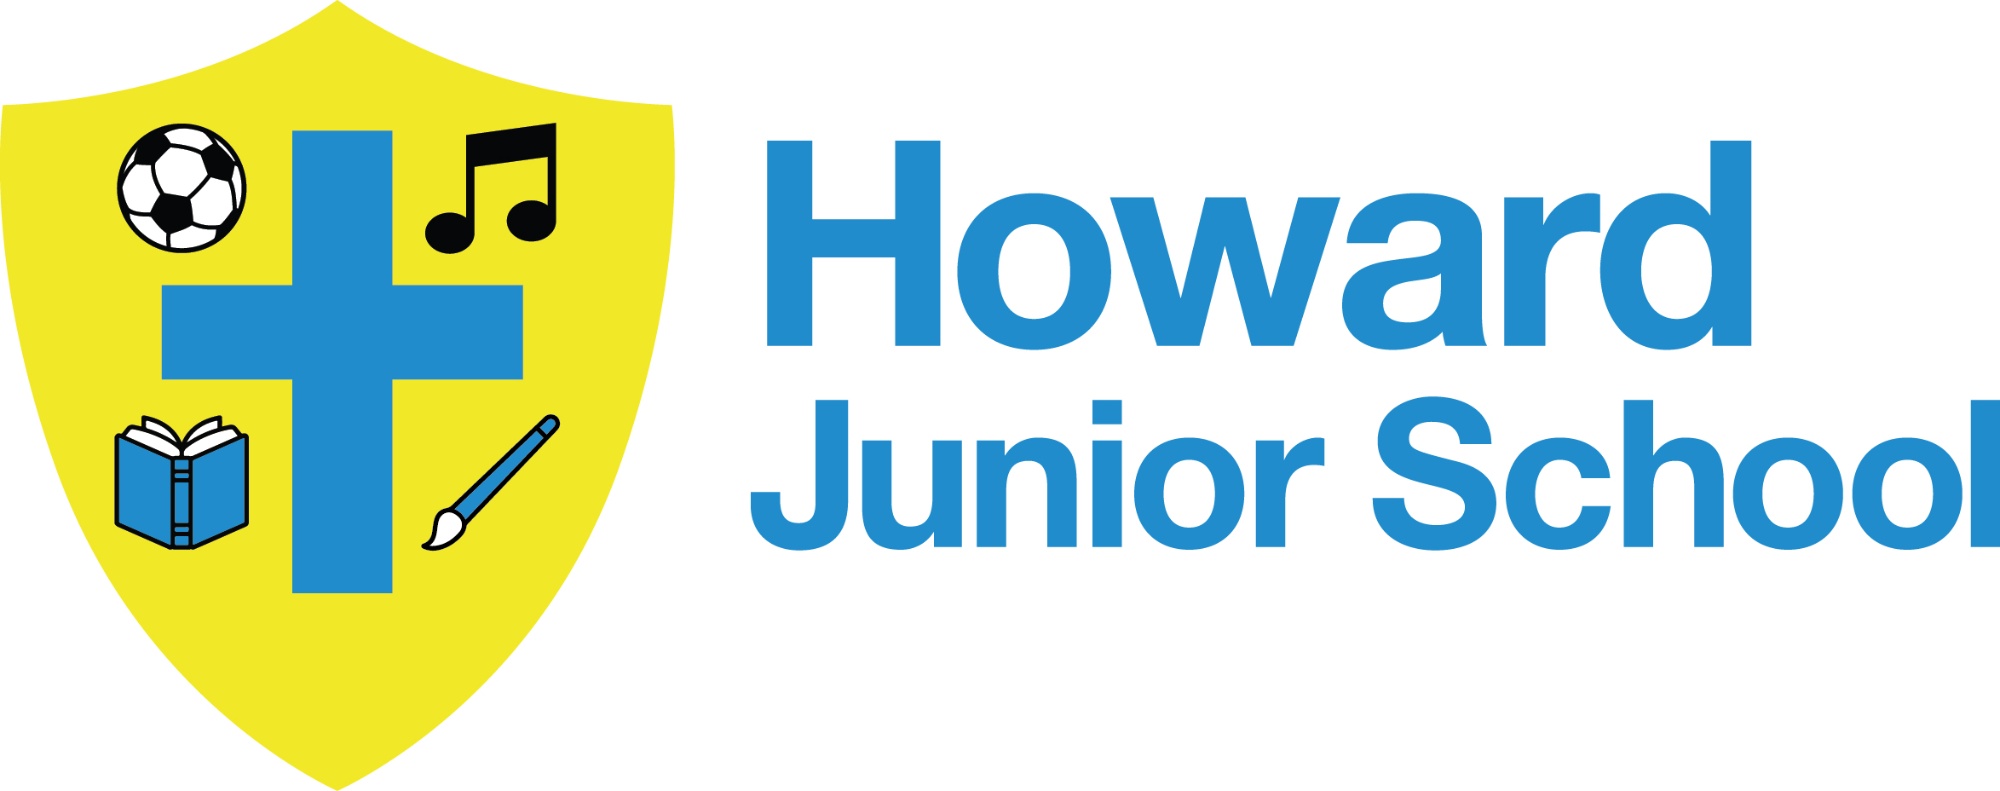 Howard Junior School logo